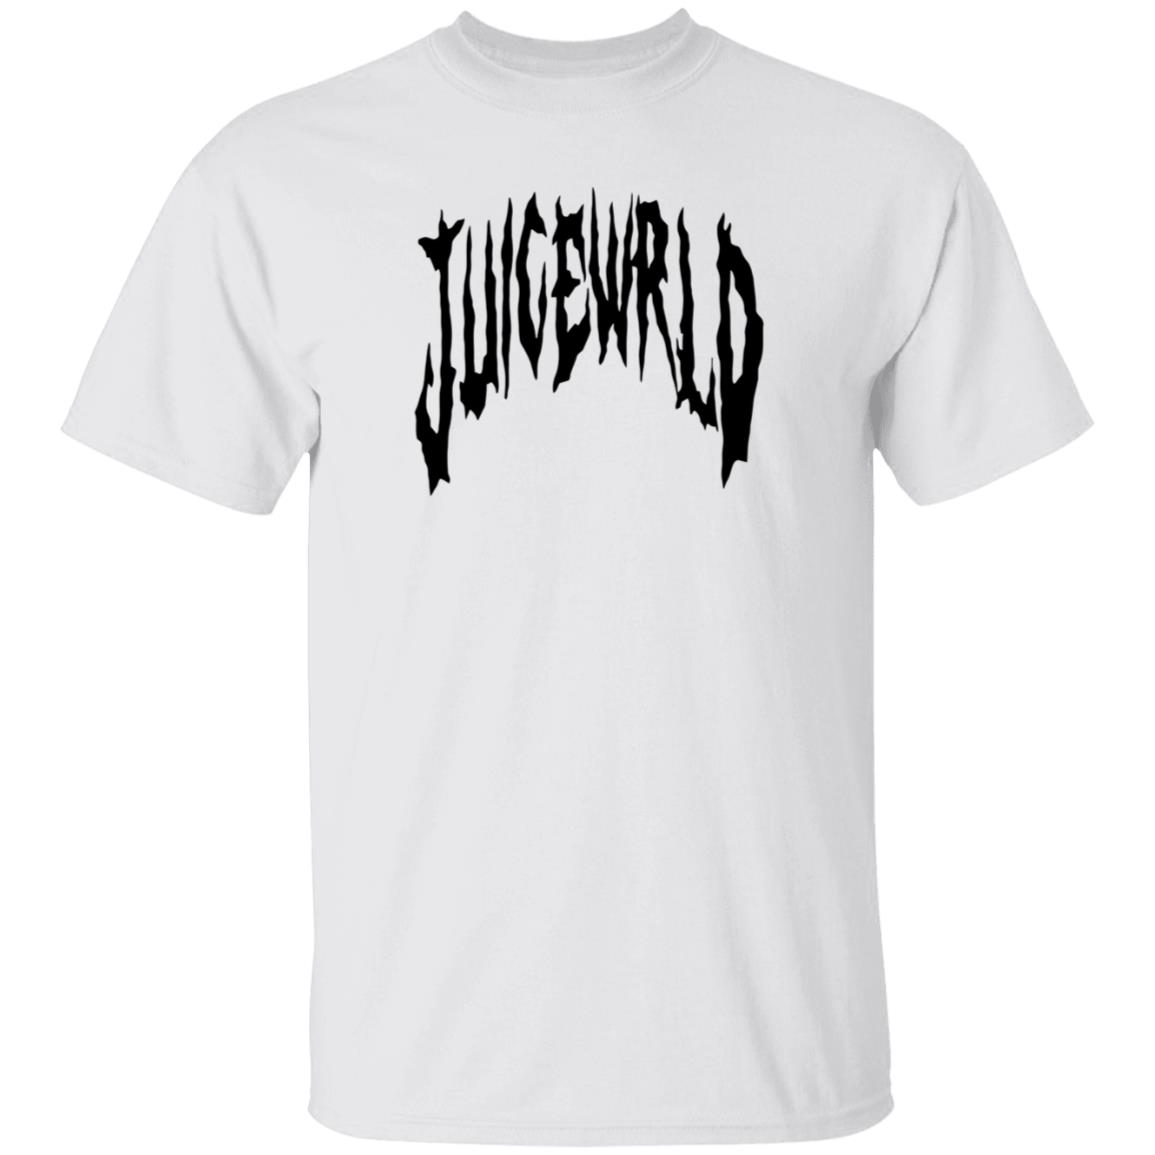 Juice Wrld Official Store: Your Destination for Fans